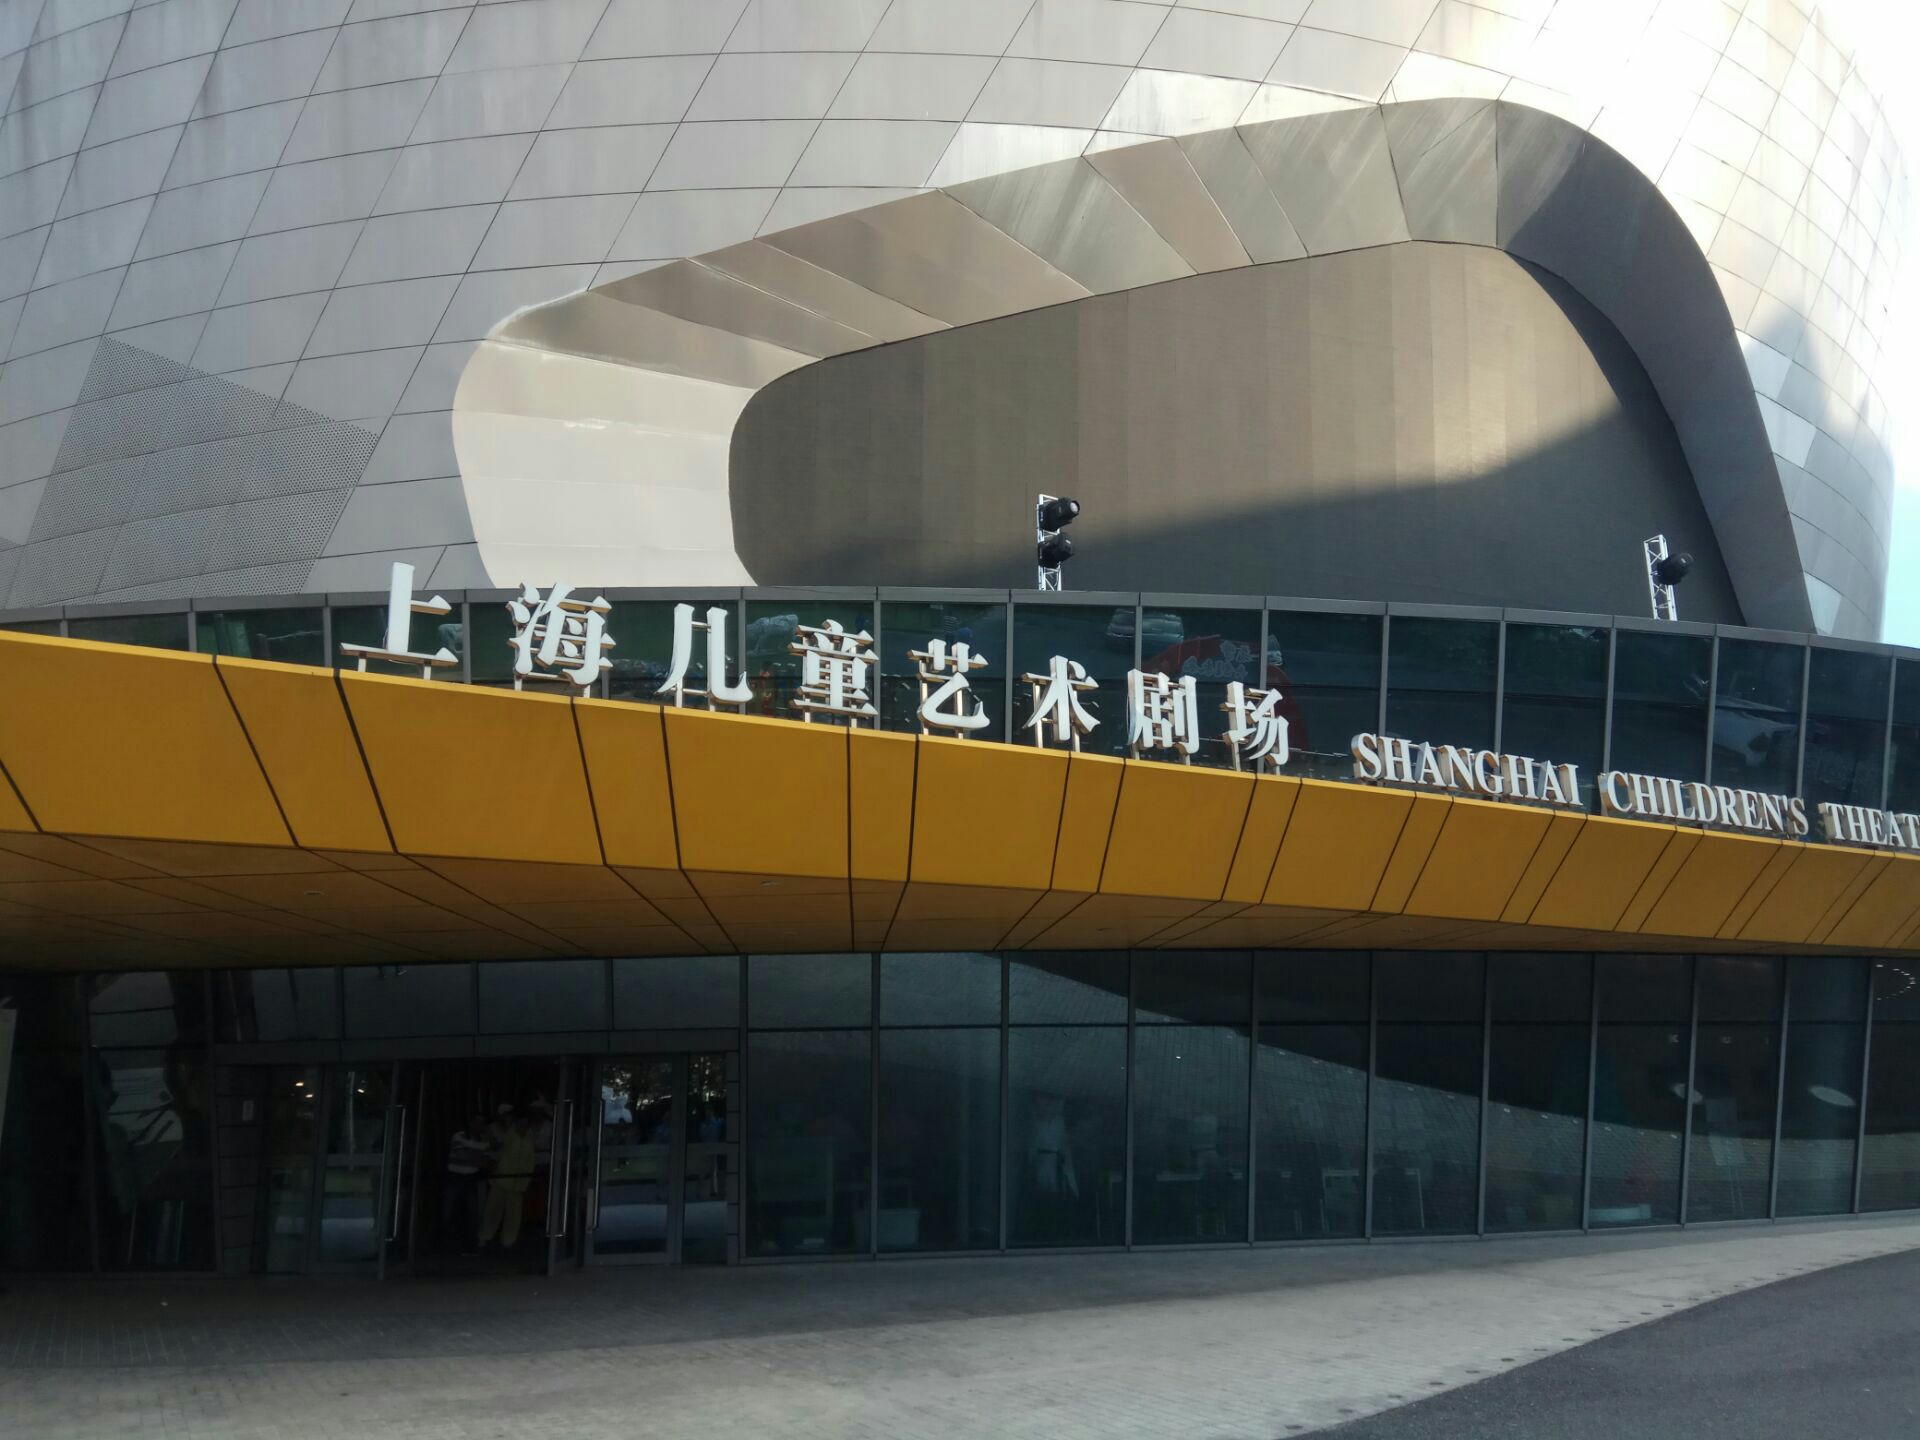 【携程攻略】上海儿童艺术剧场门票,上海儿童艺术剧场攻略/地址/图片/门票价格